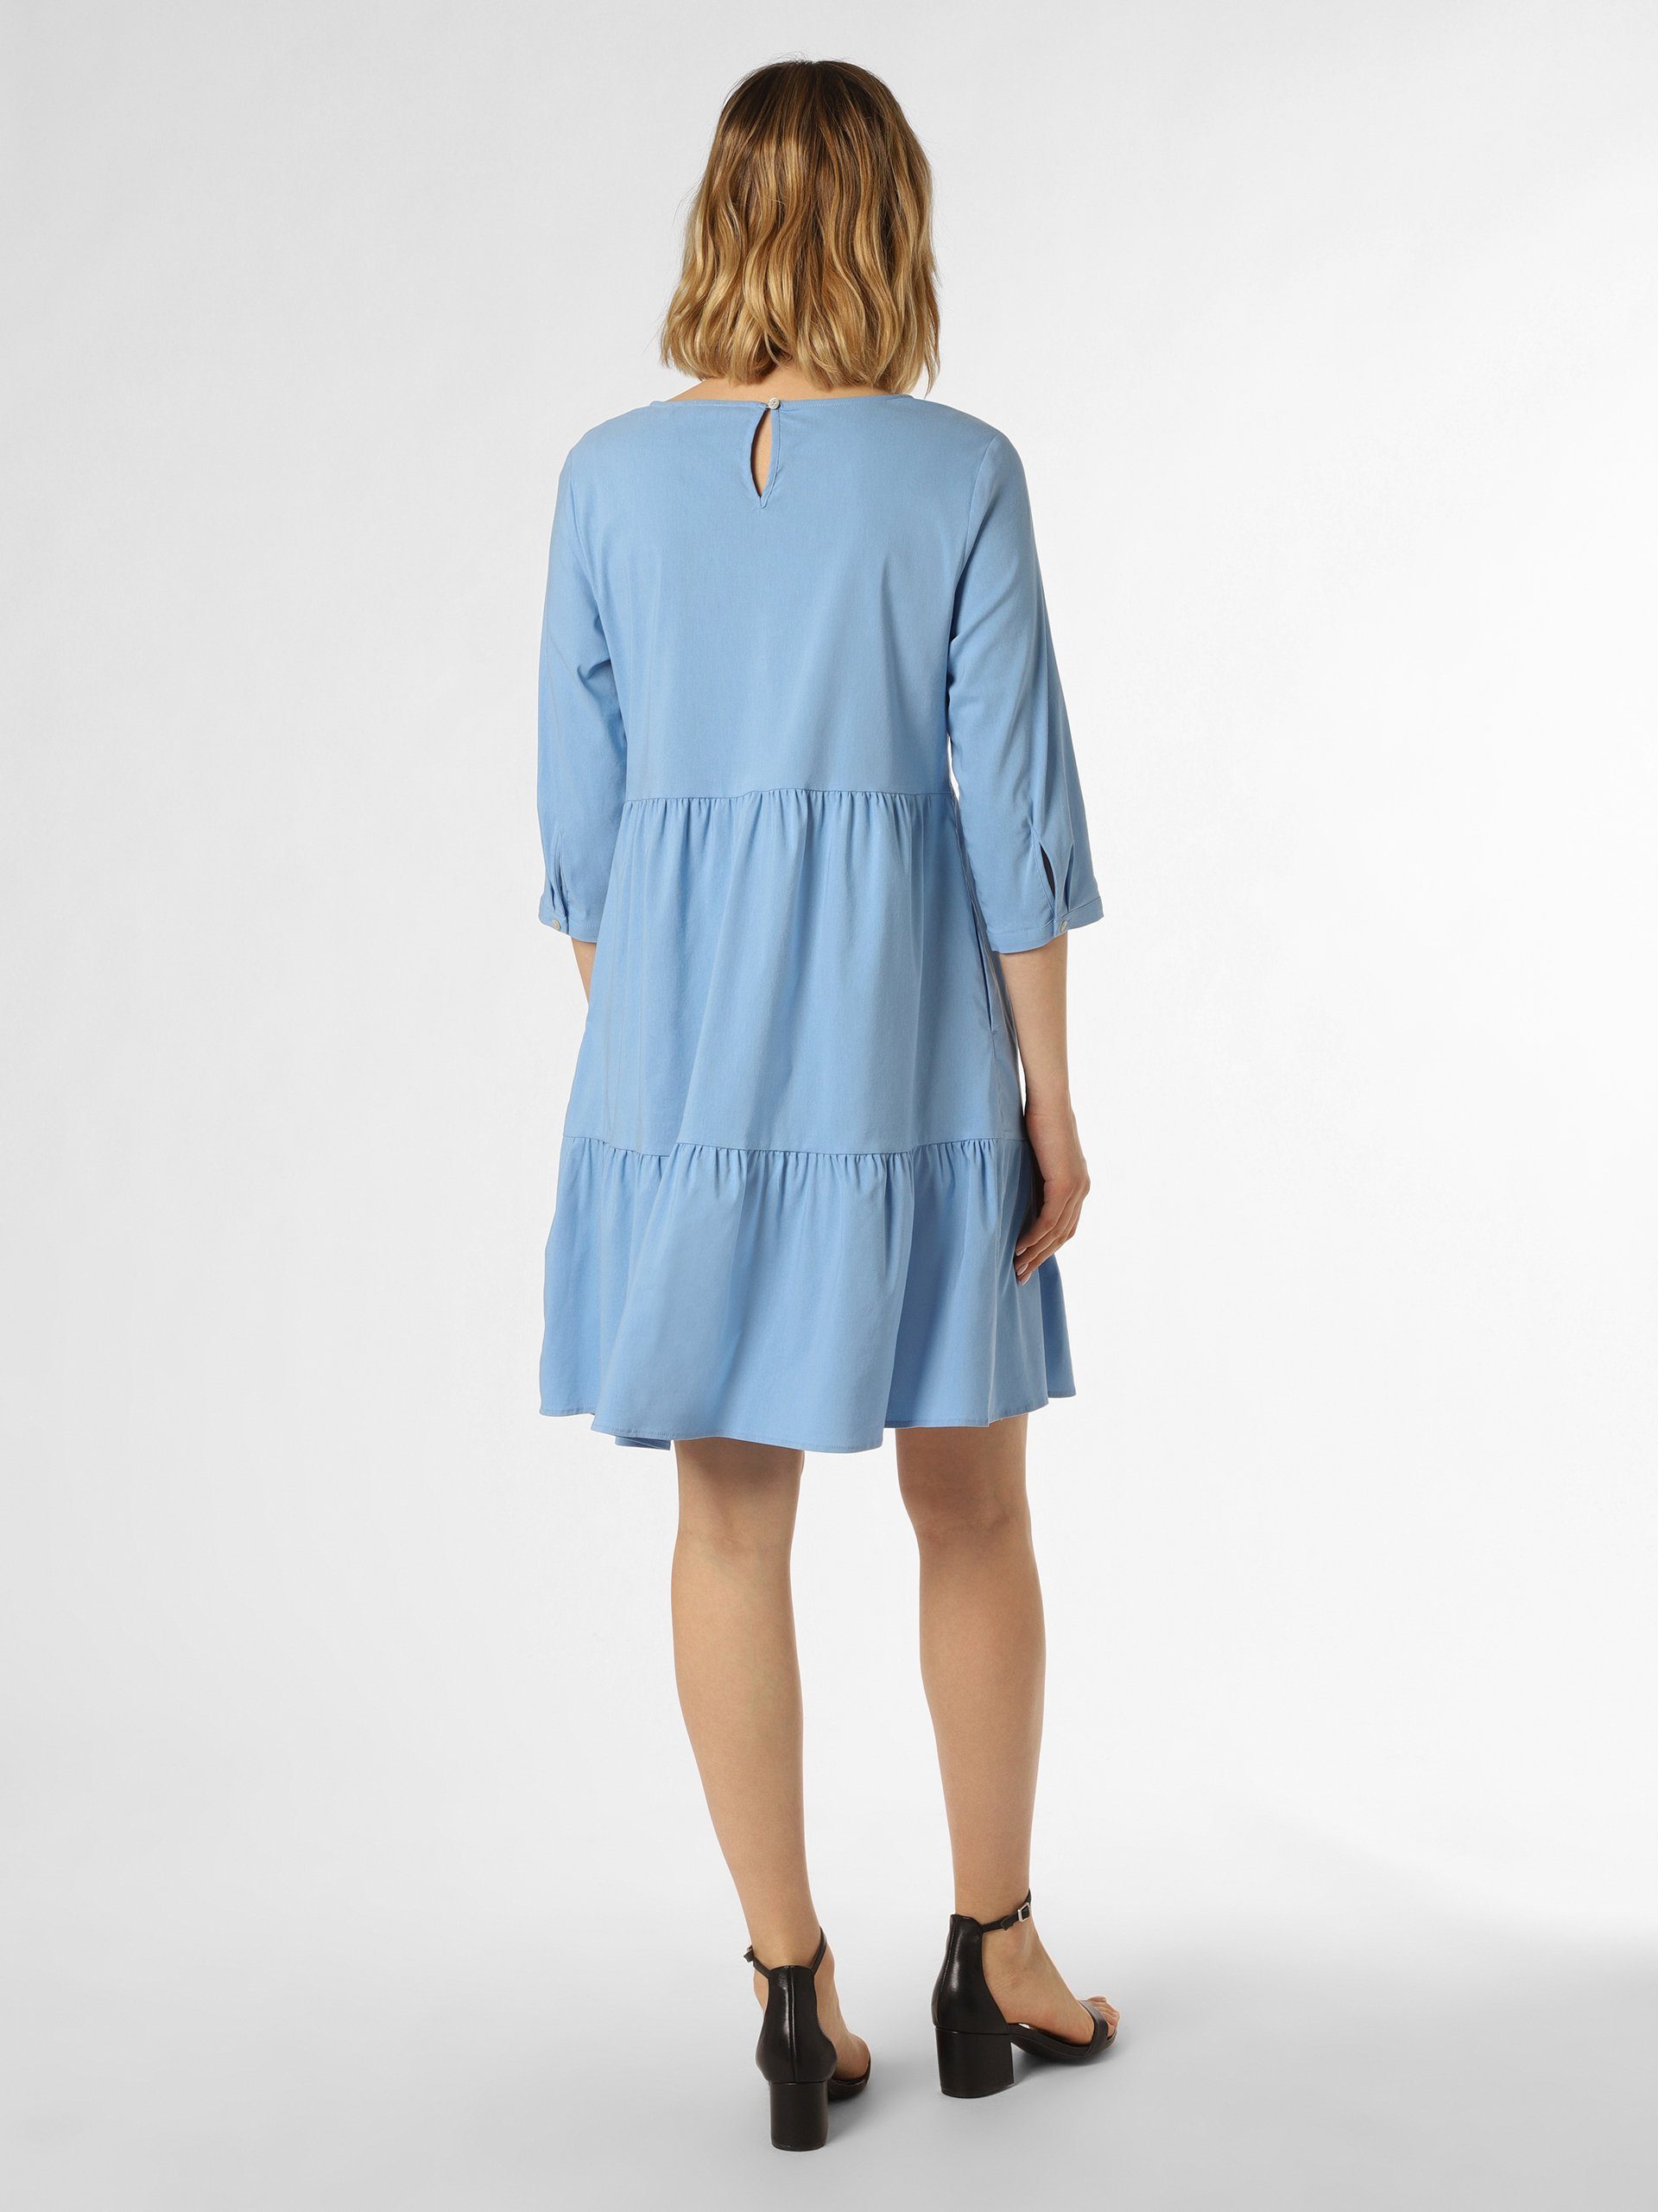 Marie Lund hellblau A-Linien-Kleid